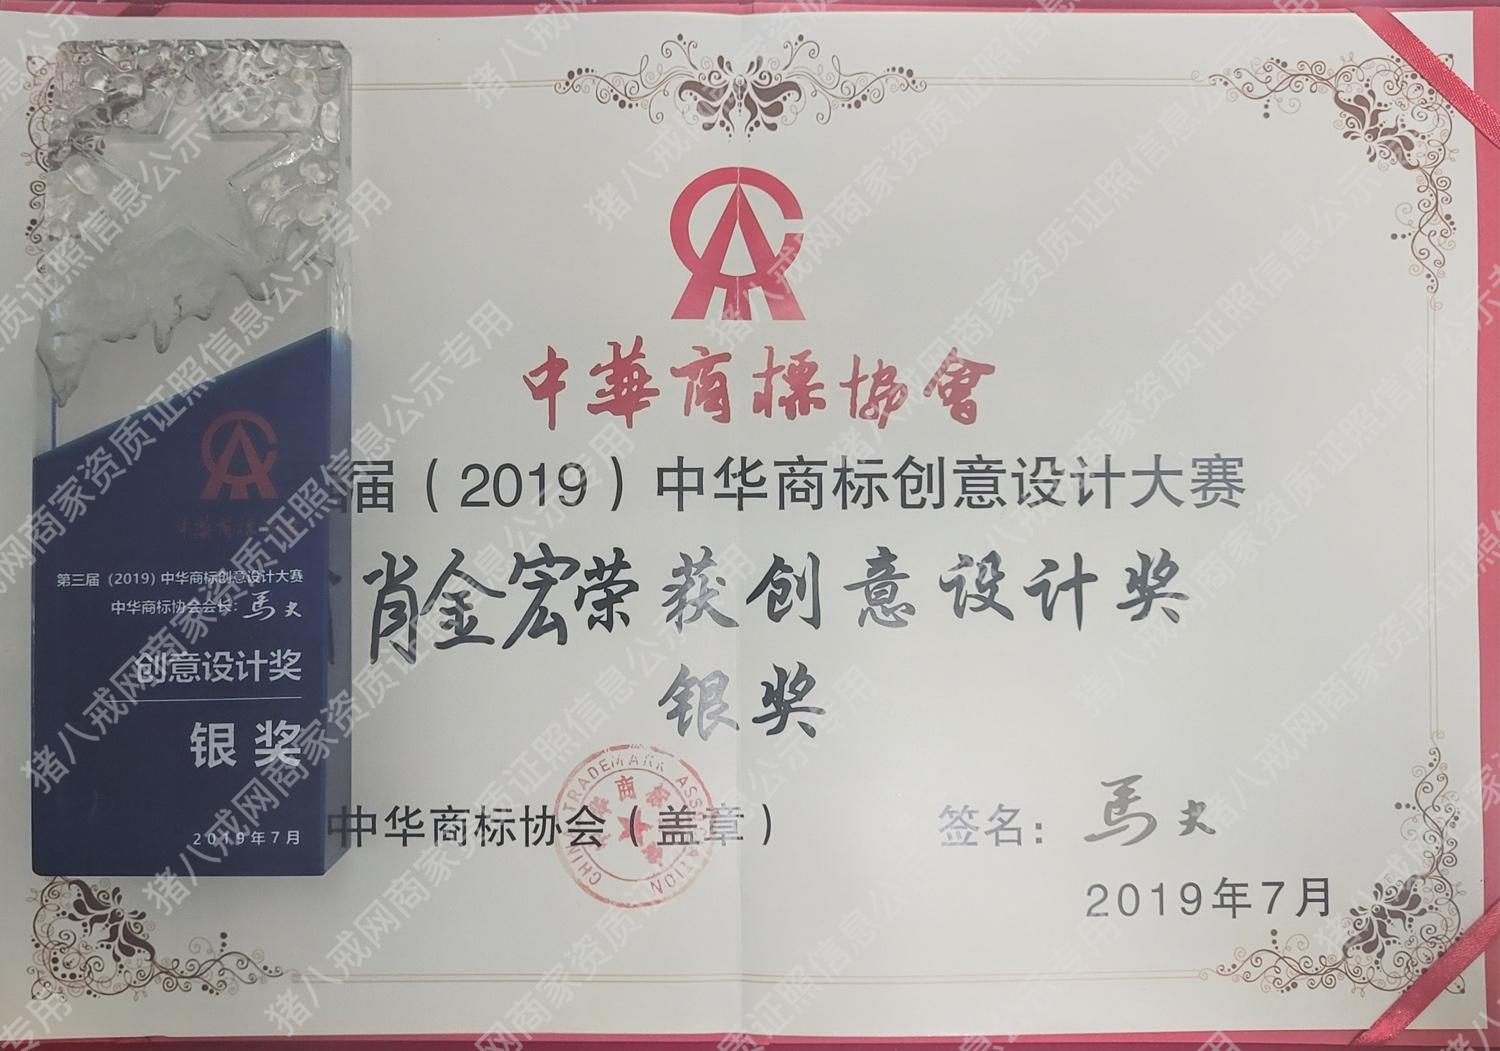 第三届(2019)中华商标创意设计大赛  创意设计奖-银奖